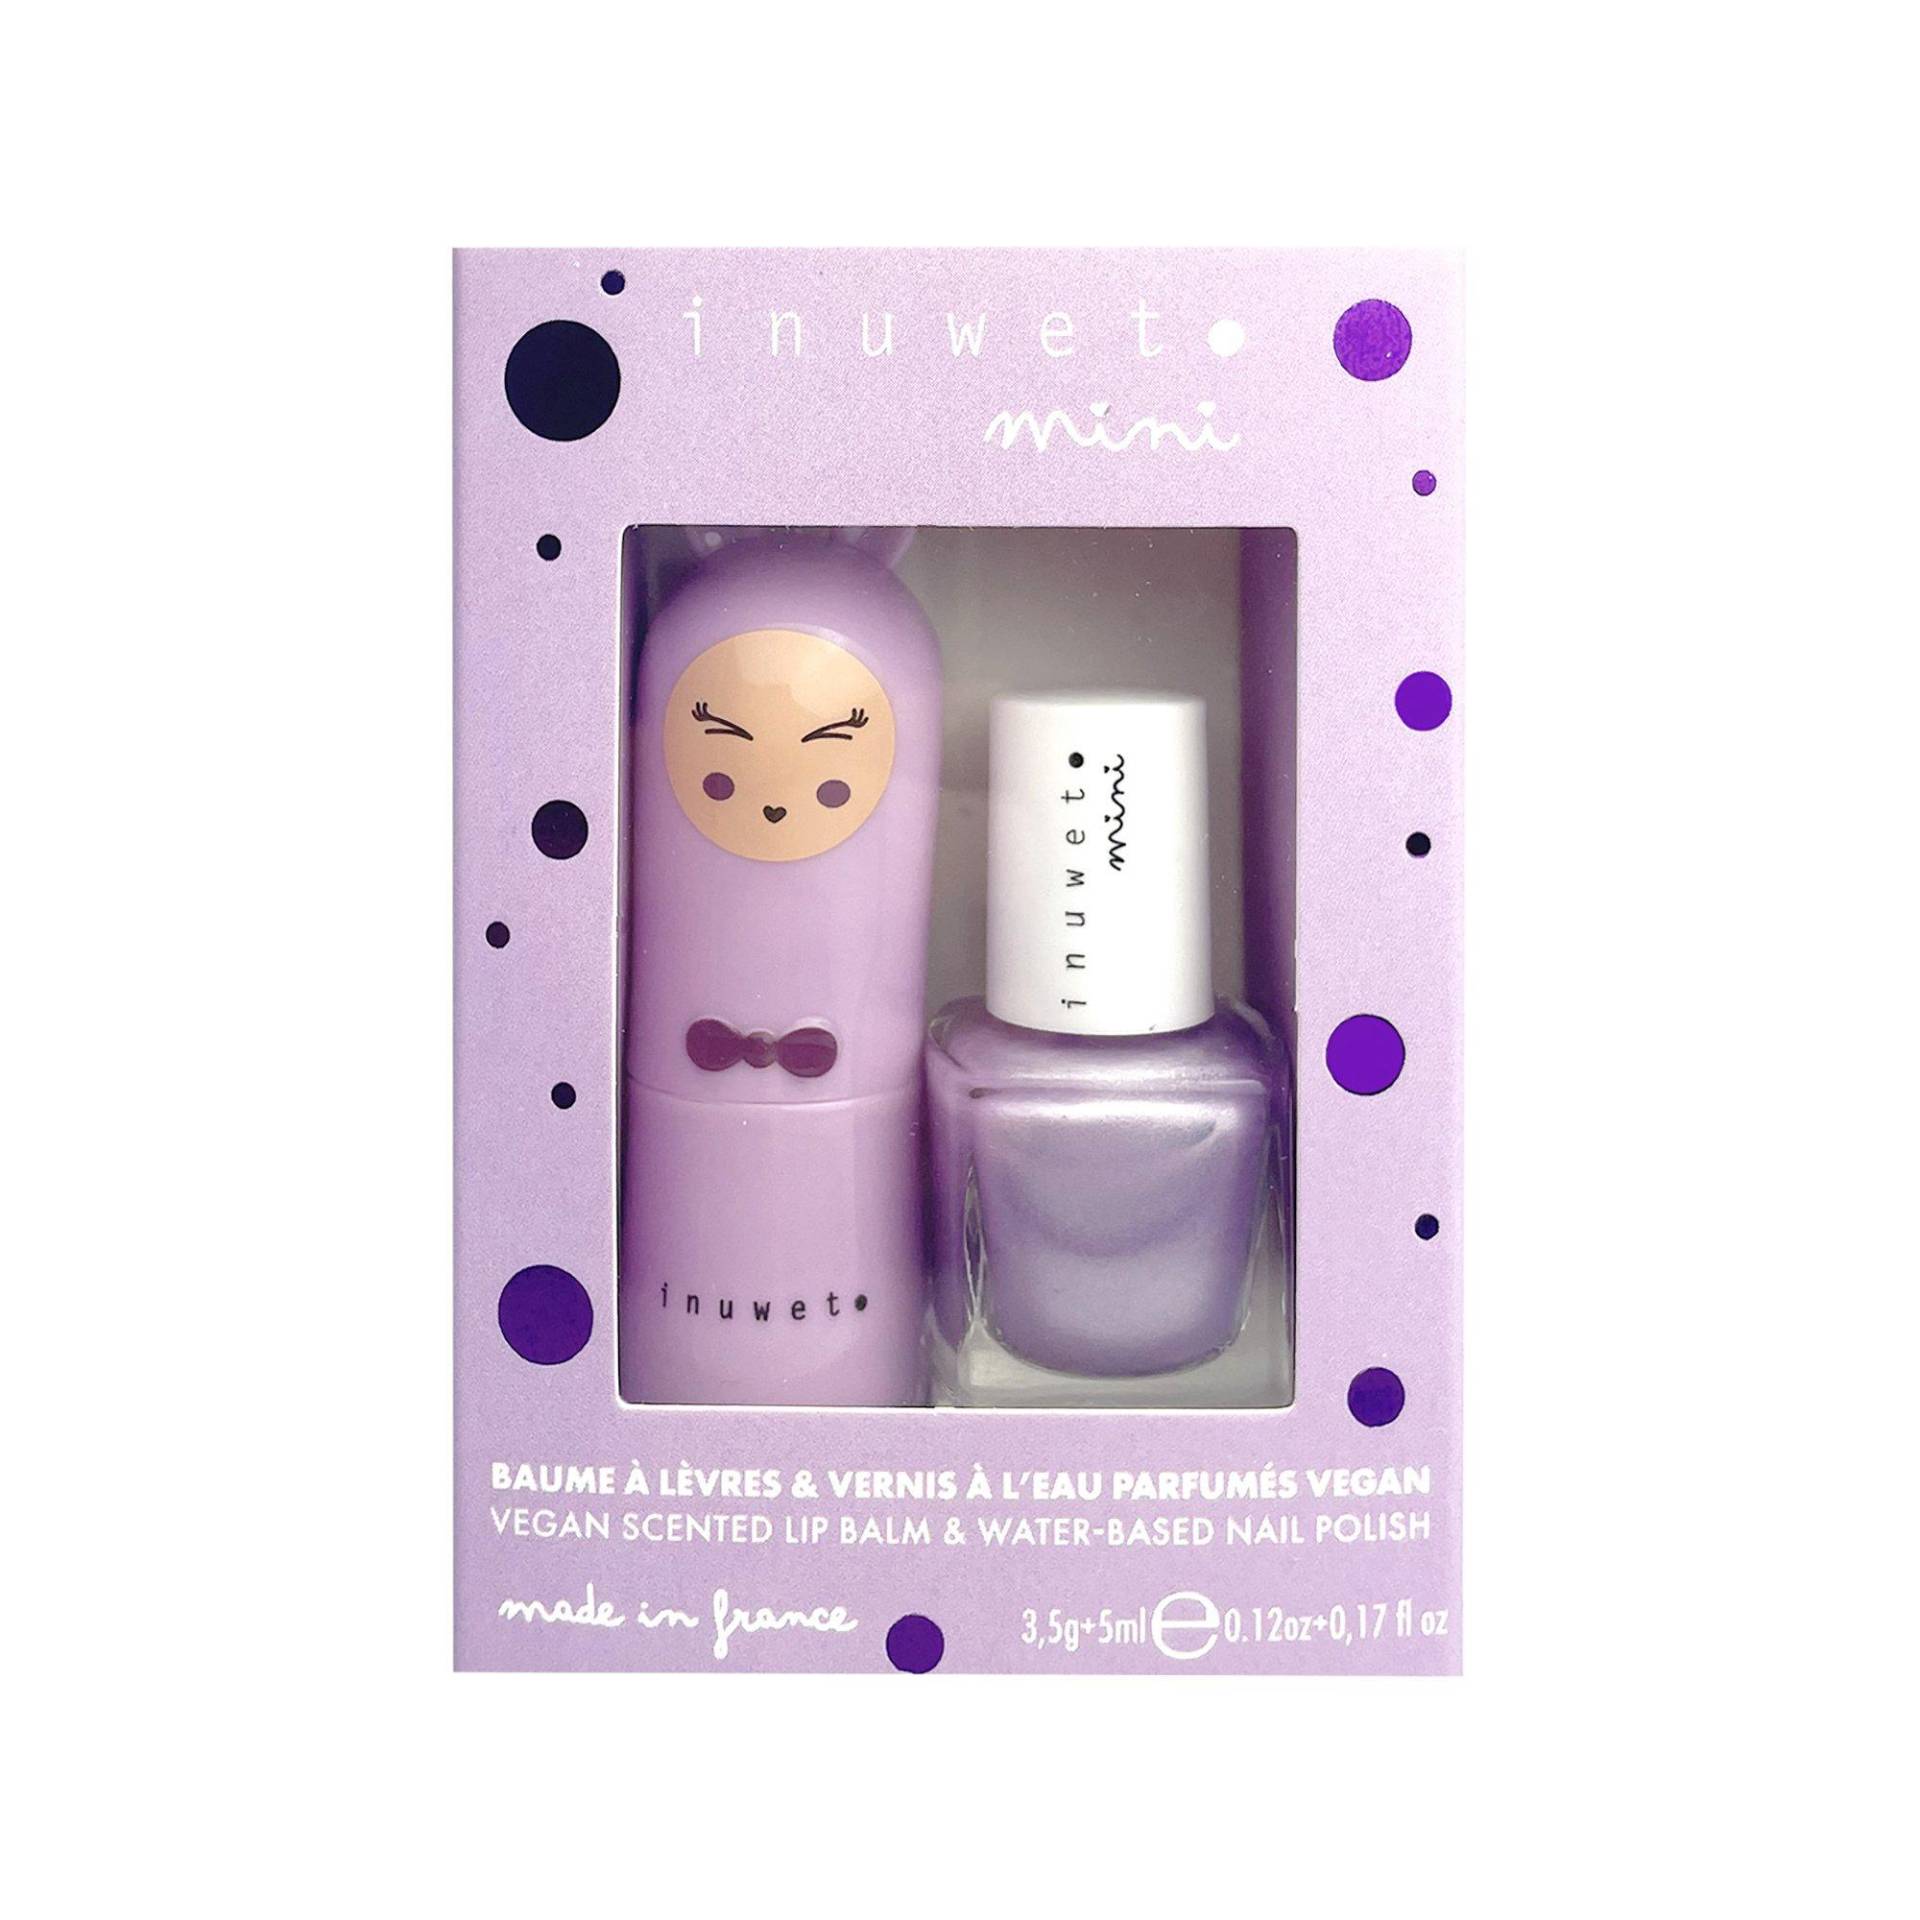 Purple Duo Box Lippenbalsam Und Lack Auf Wasserbasis Für Kinder – Regenbogen – Vegan, Natürlich, Hergestellt In Frankreich Damen von inuwet